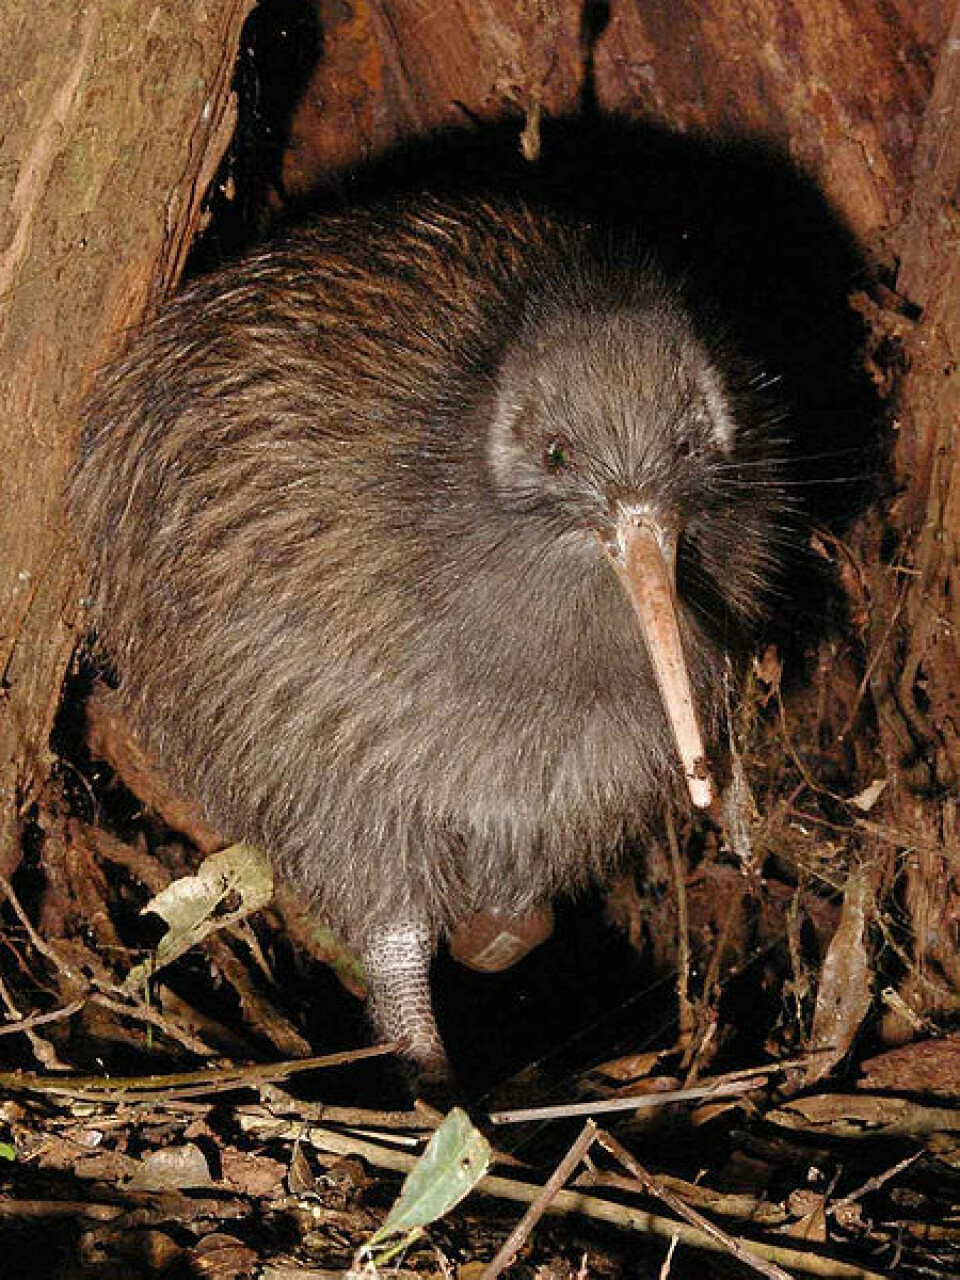 Historien fortsetter. Idag står kiwiene på New Zealand i fare for å forsvinne. (Foto: Maungatautari Ecological Island Trust/Wikimedia Commons)